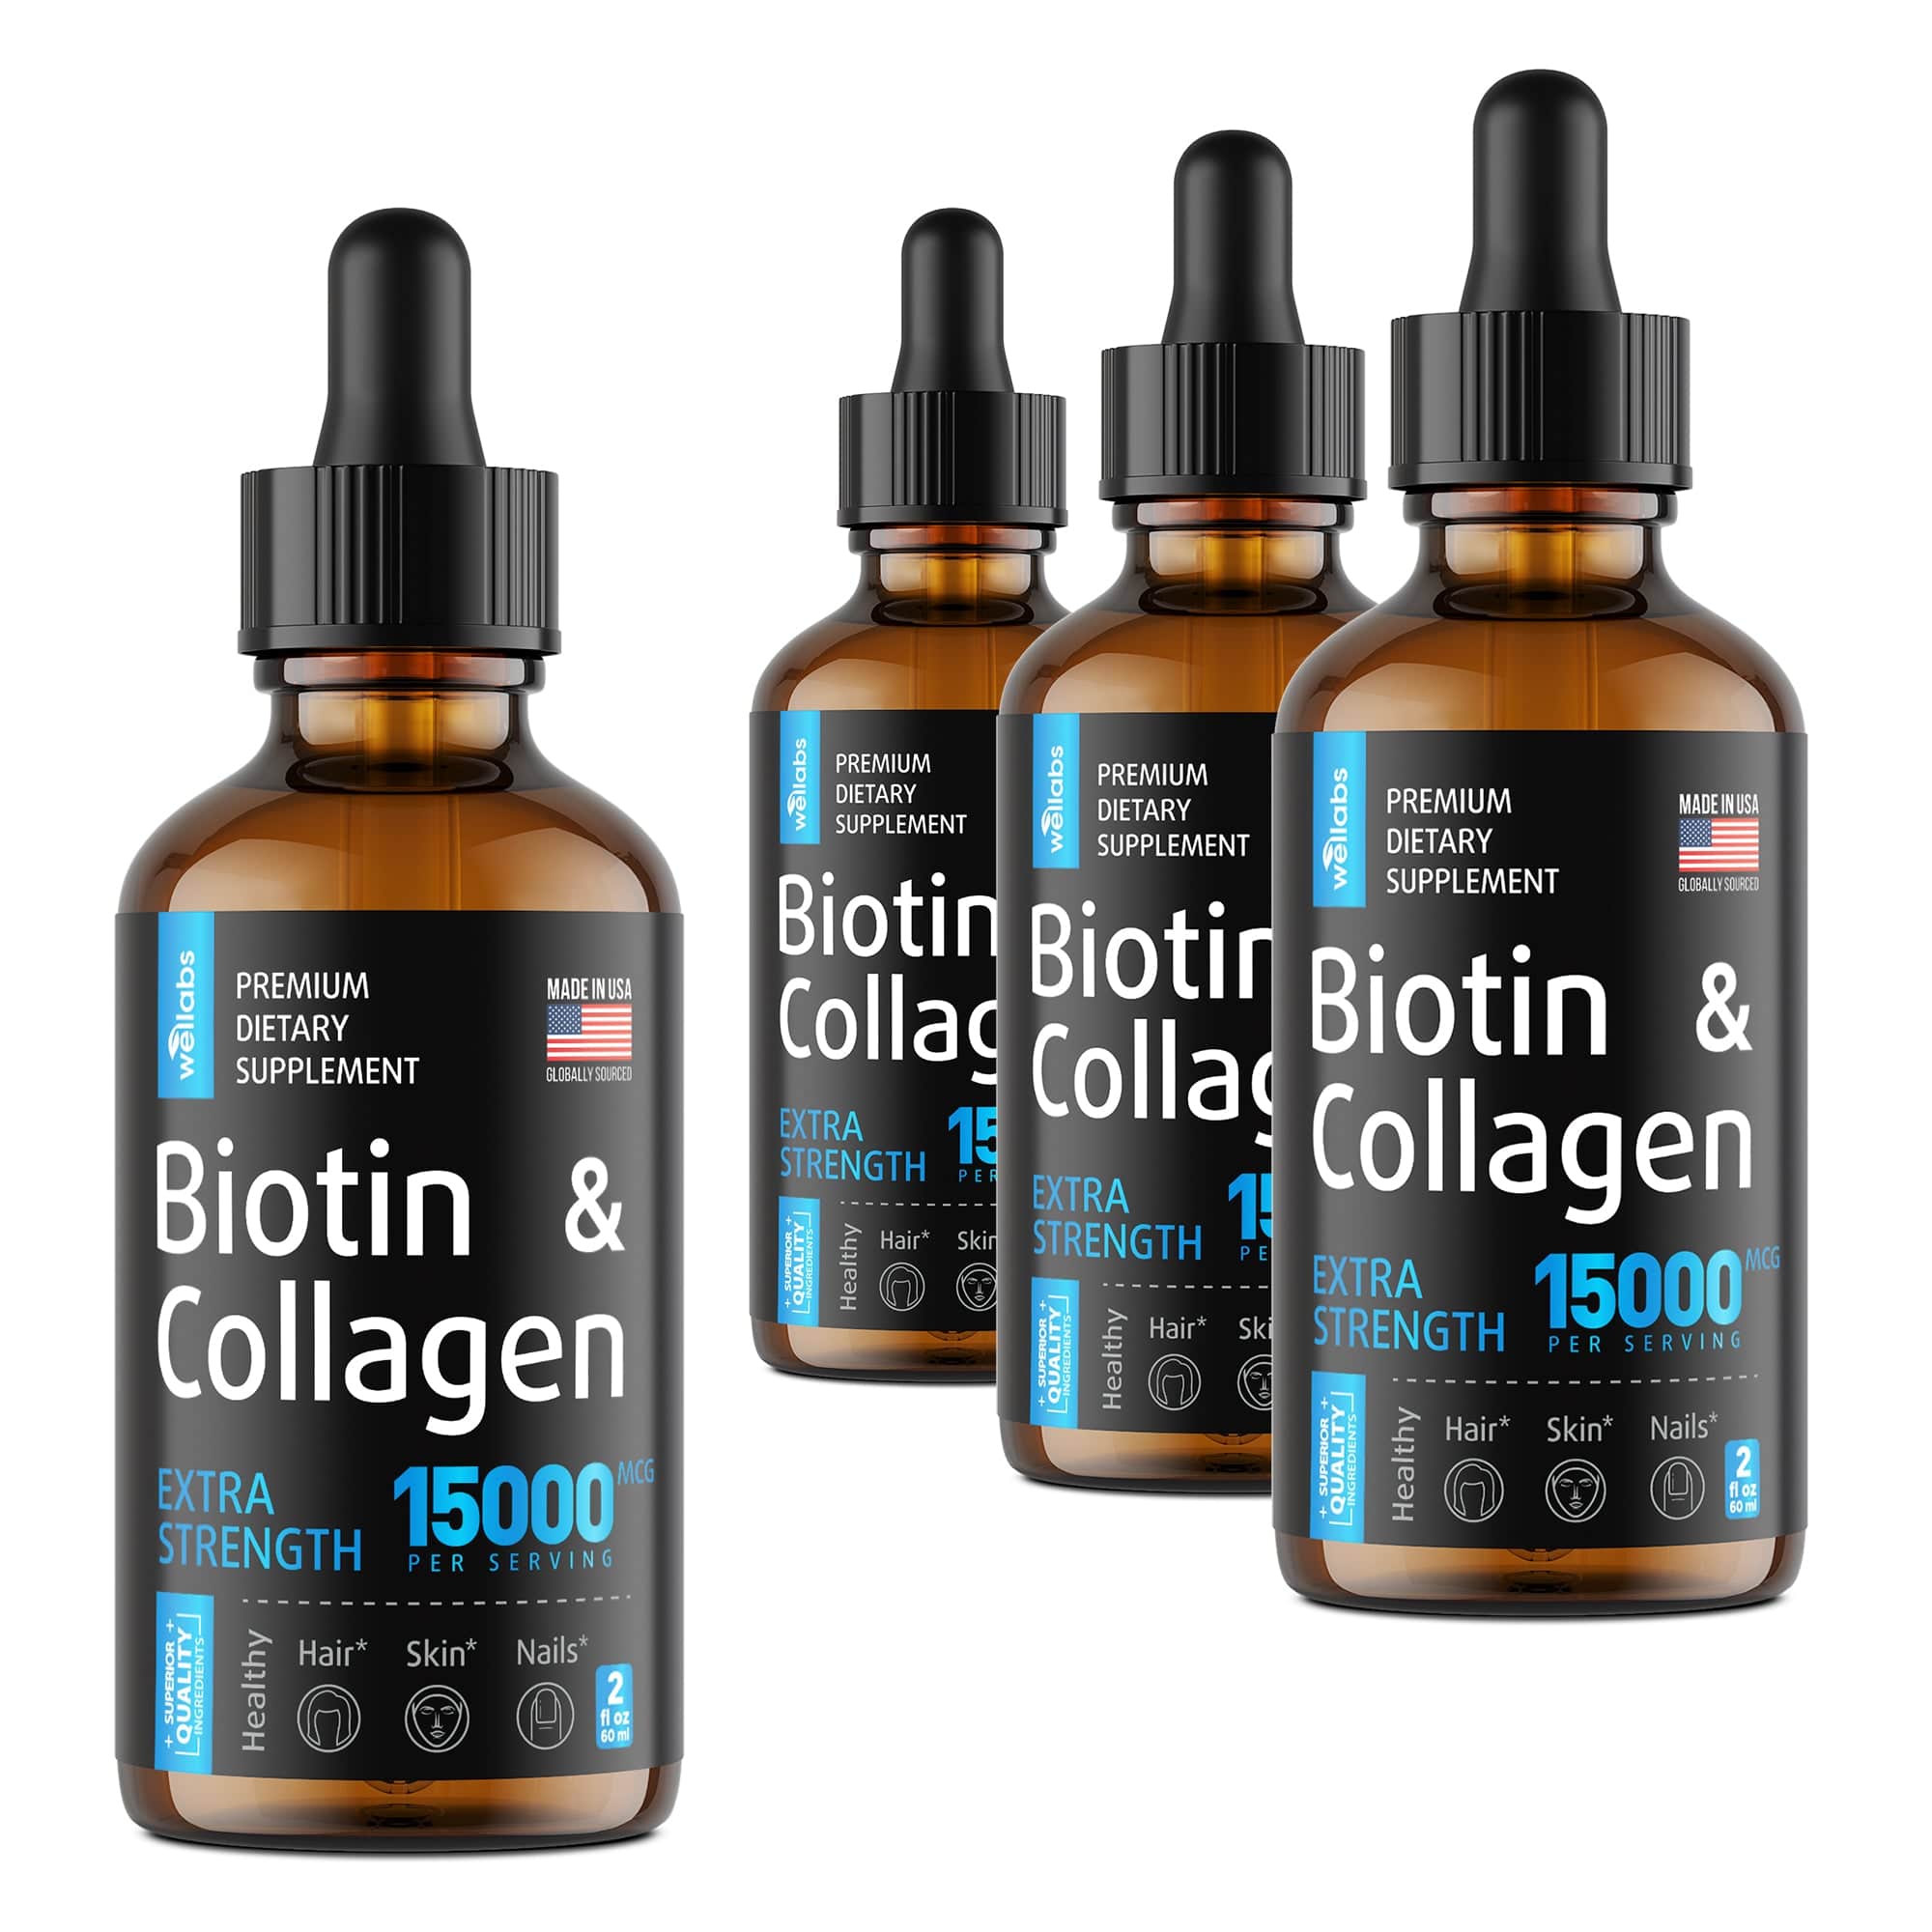 Biotin & Collagen Drops - Buy 3 Get 1 Free